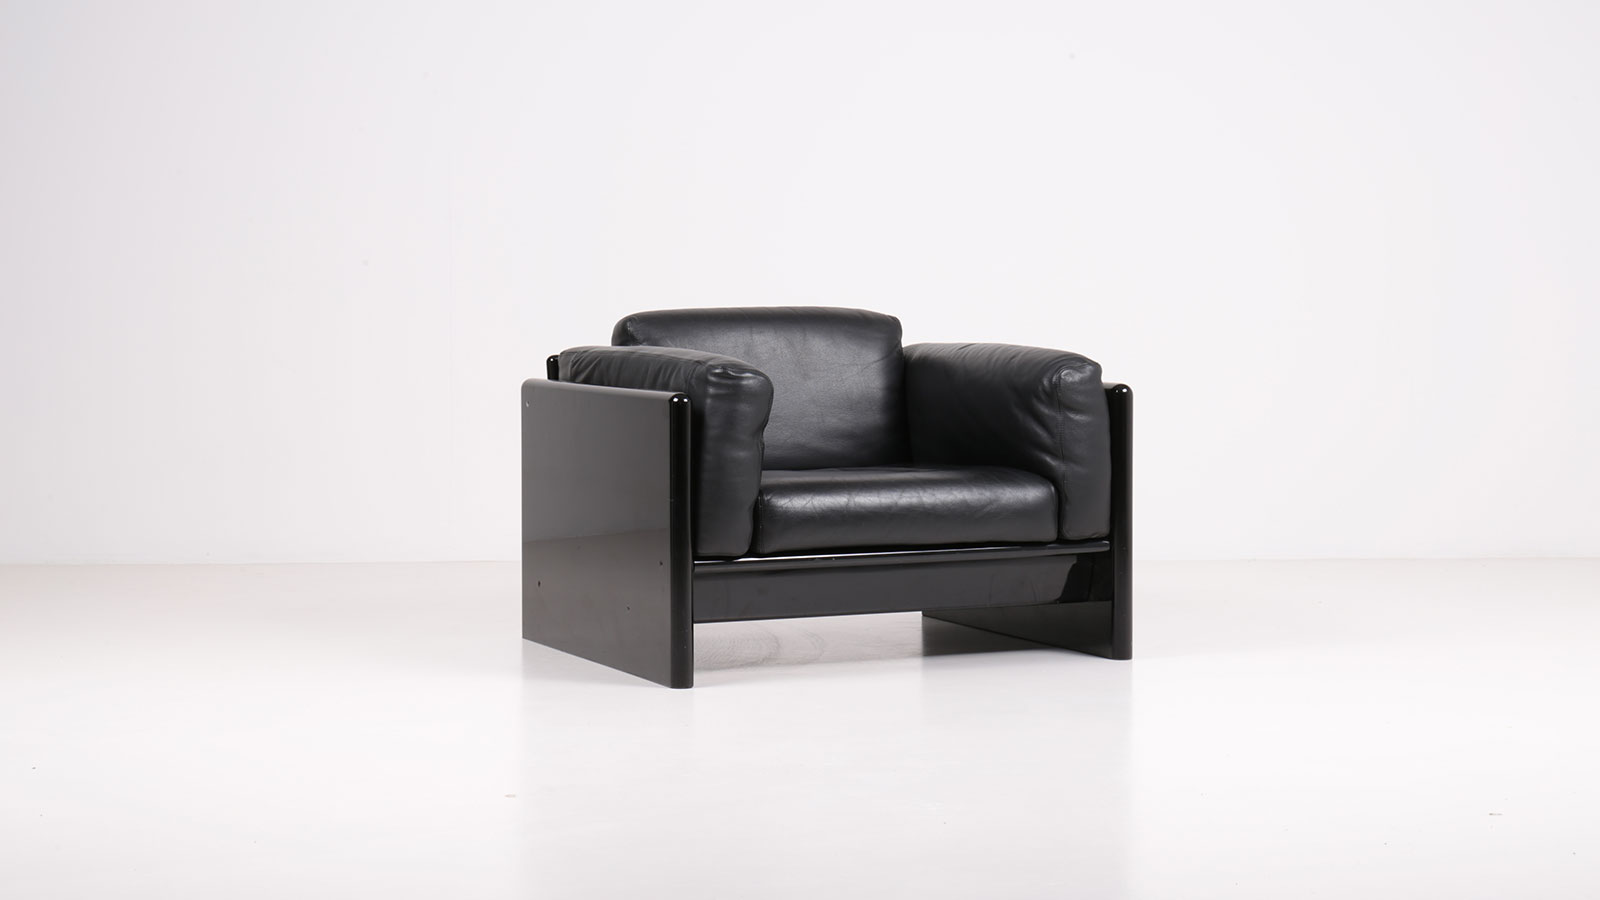 Simone armchair by Ufficio Progetti Gavina | Paradisoterrestre